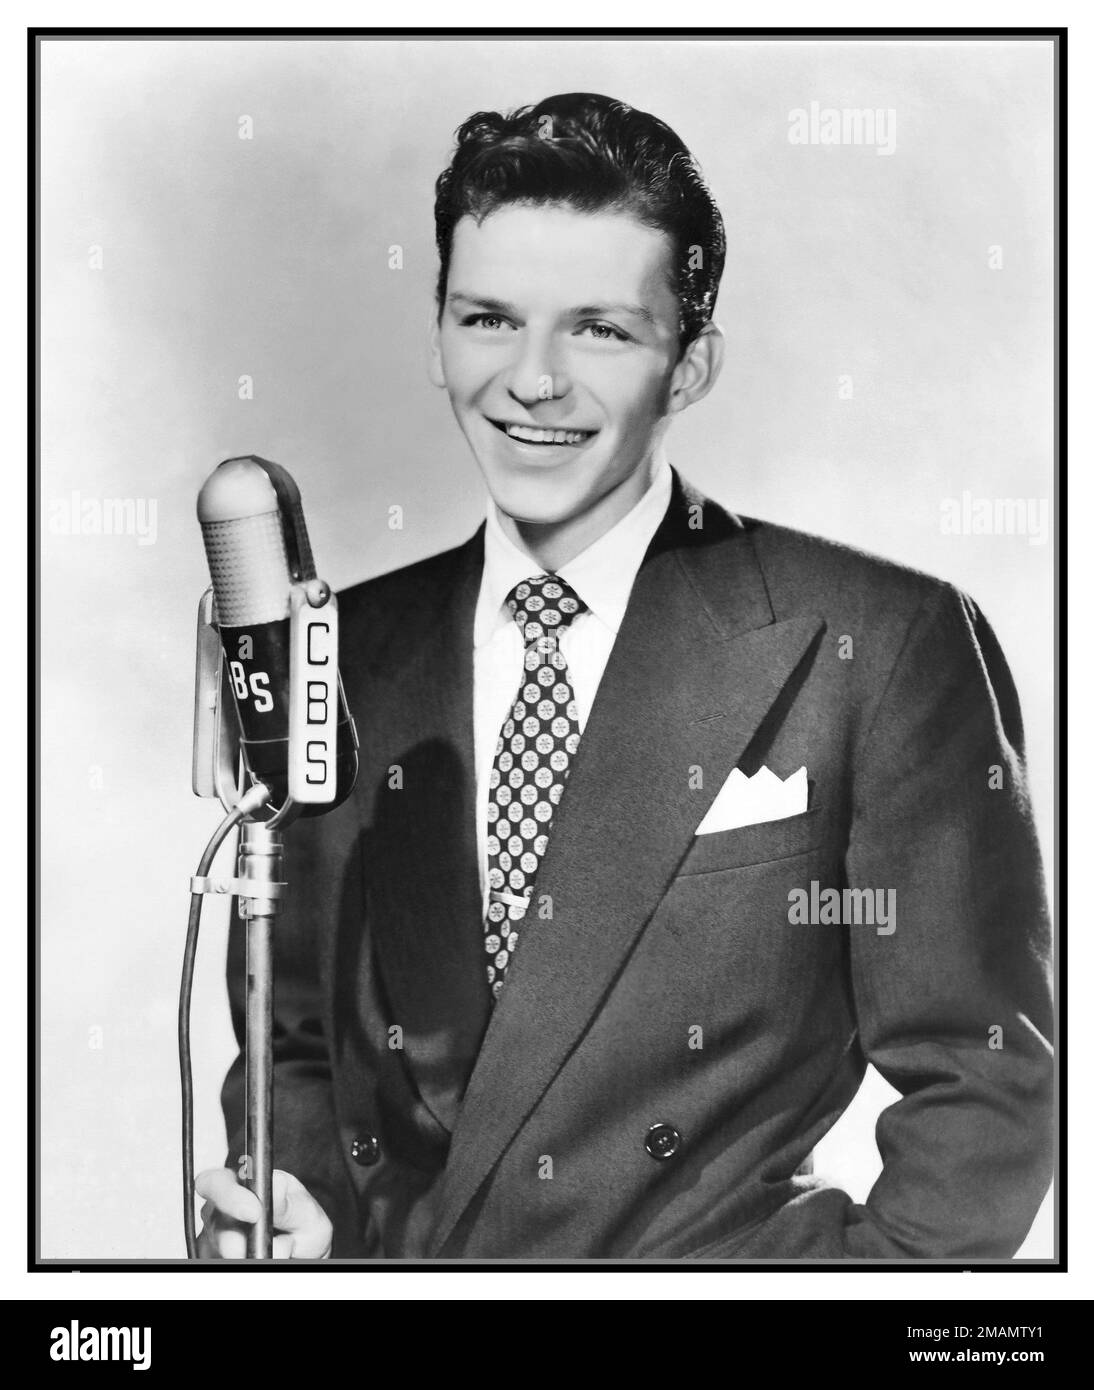 FRANK SINATRA GIOVANE 1942 pubblicitaria ritratto foto di Frank Sinatra nel 1942 con un microfono CBS, rilasciato per promuovere una prima iterazione 1940s del Frank Sinatra Show sulla radio CBS. Hollywood, Stati Uniti Foto Stock